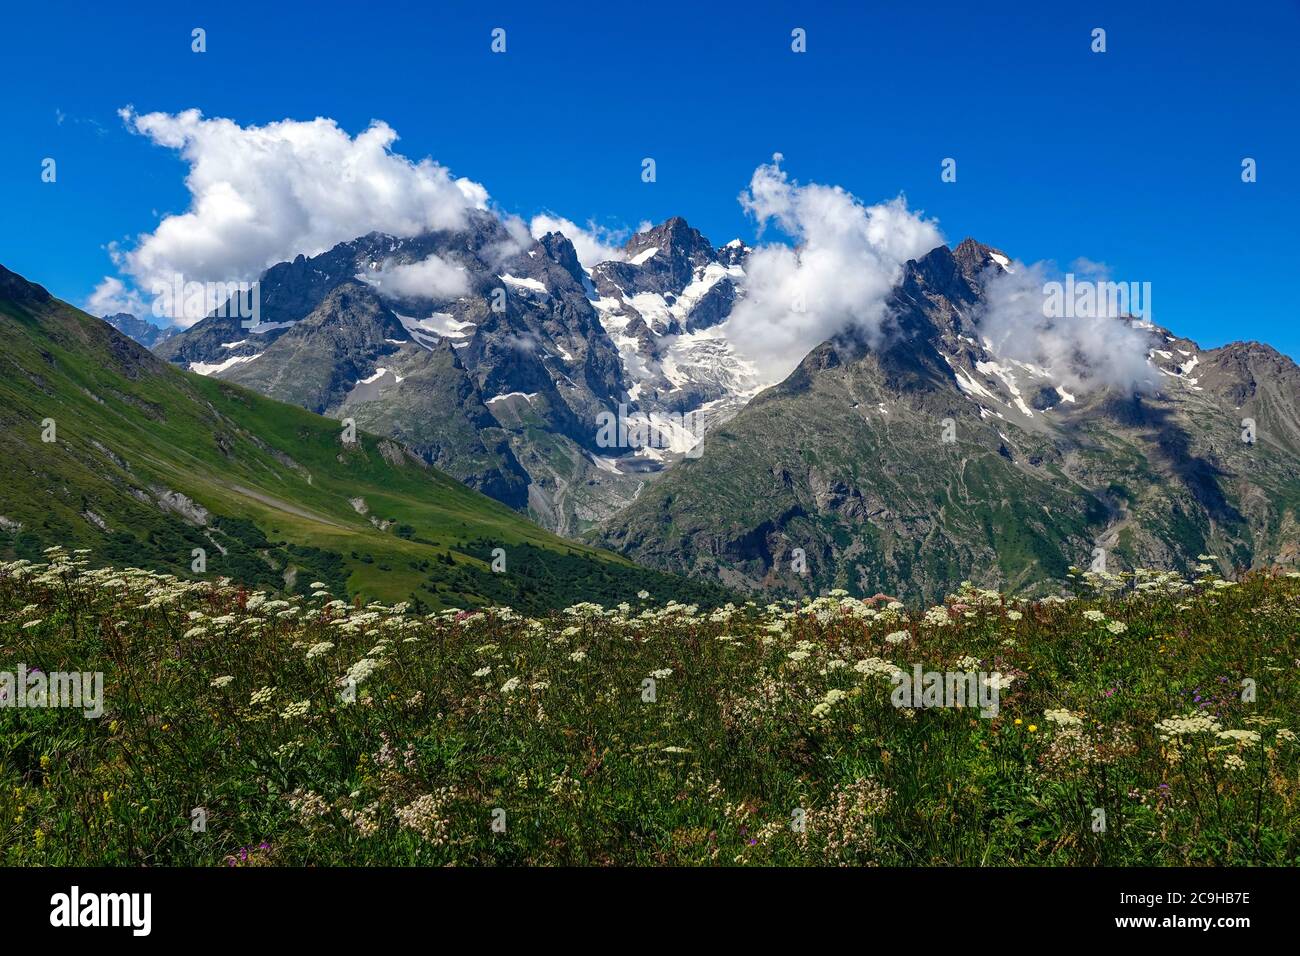 Prairies verdoyantes, fleurs alpines et pics alpins, Parc national des Ecrins, Alpes françaises, France Banque D'Images